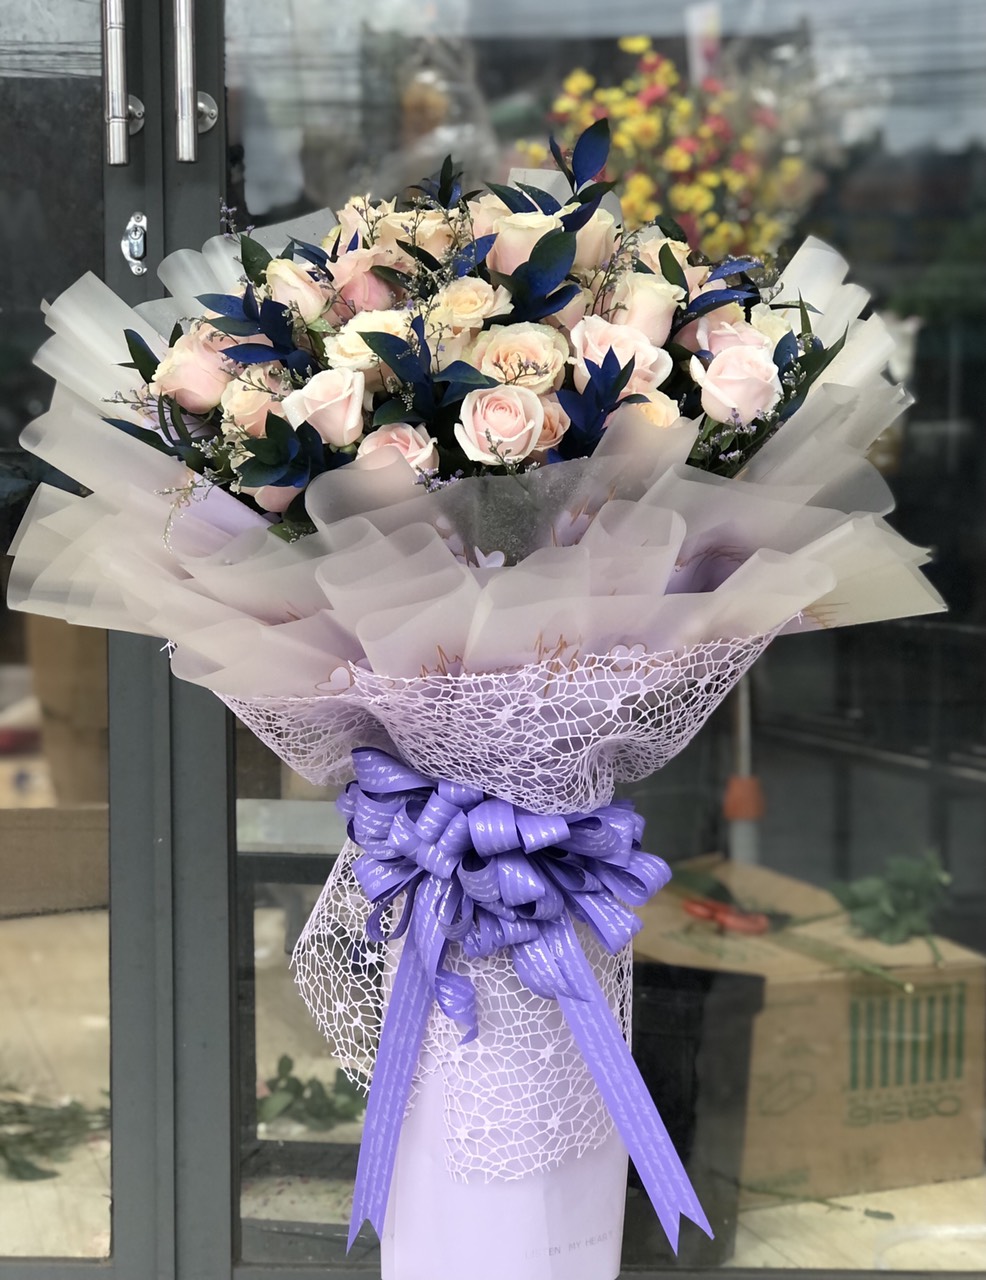 Đây chắc chắn là một bó hoa sinh nhật đầy sáng tạo và độc đáo nhất mà bạn từng thấy. Bạn sẽ tìm thấy những bông hoa quý giá và rực rỡ kết hợp với nhau tạo nên một bó hoa sinh nhật đẹp và ý nghĩa.